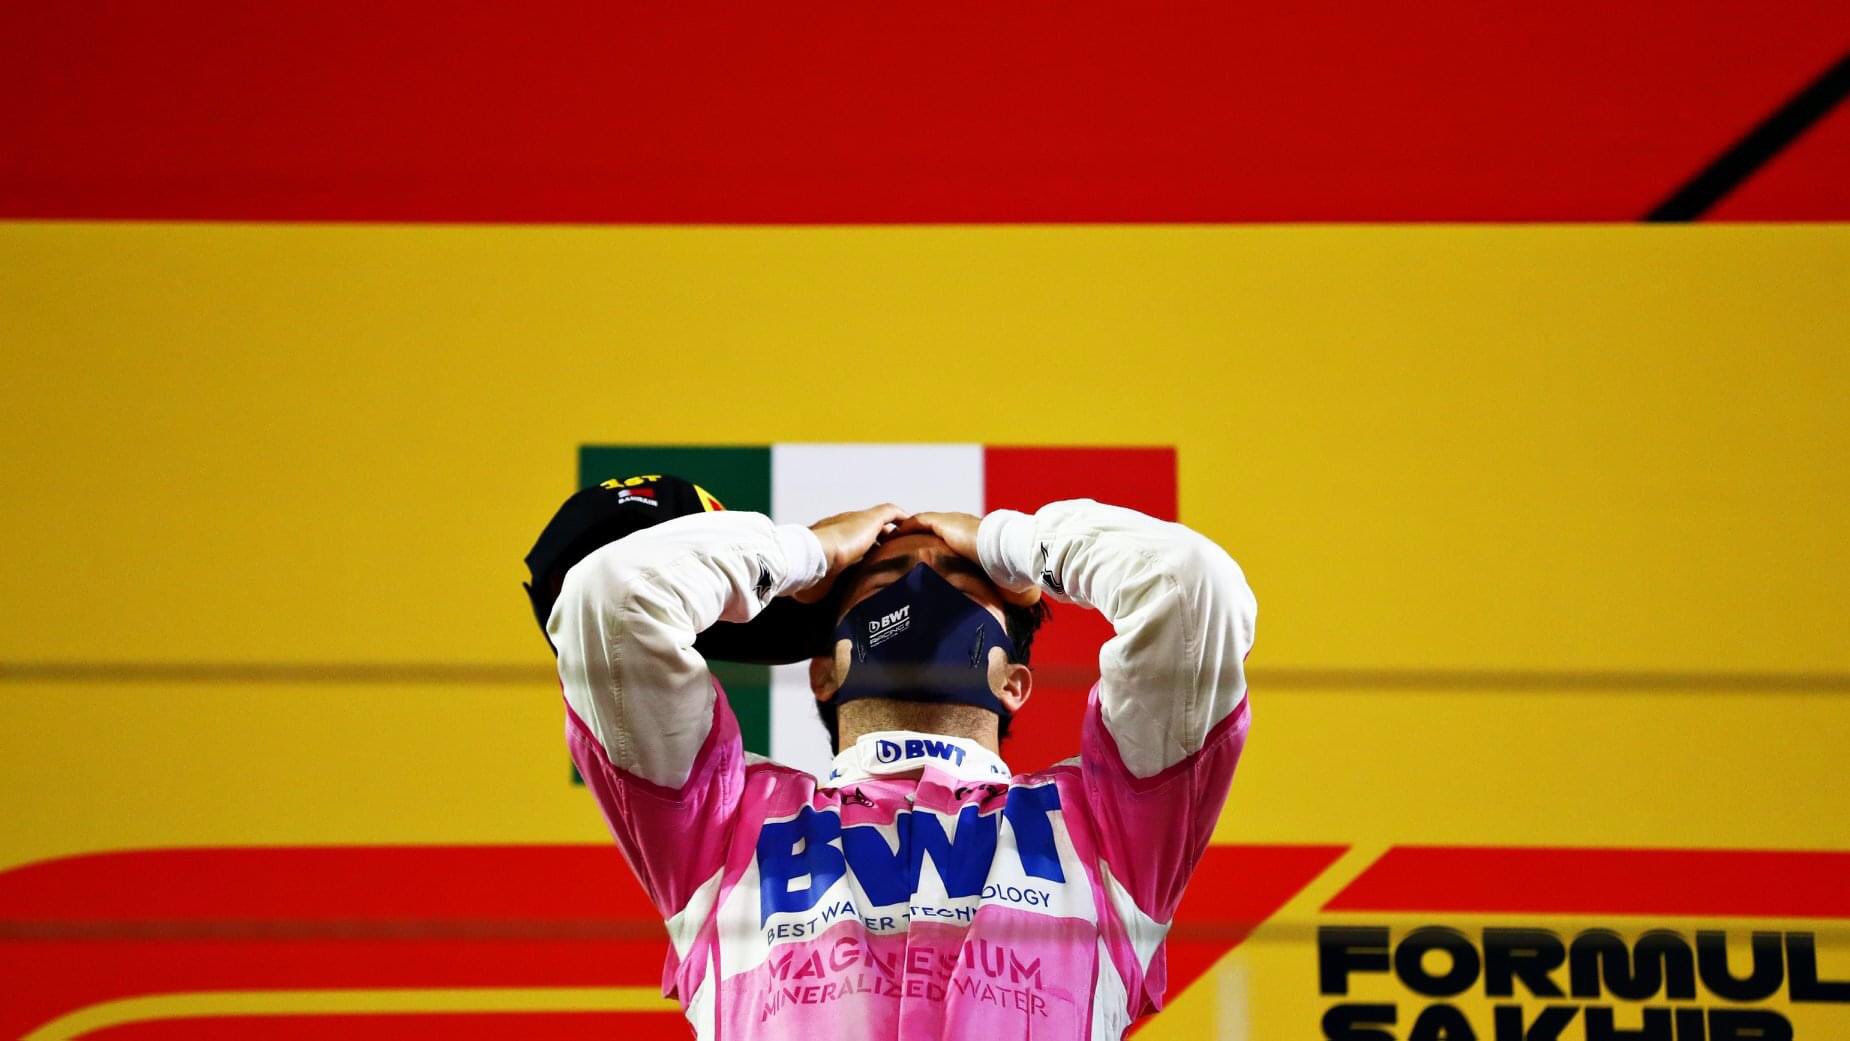 “Espero no estar soñando” Checo Pérez tras su triunfo en Fórmula 1